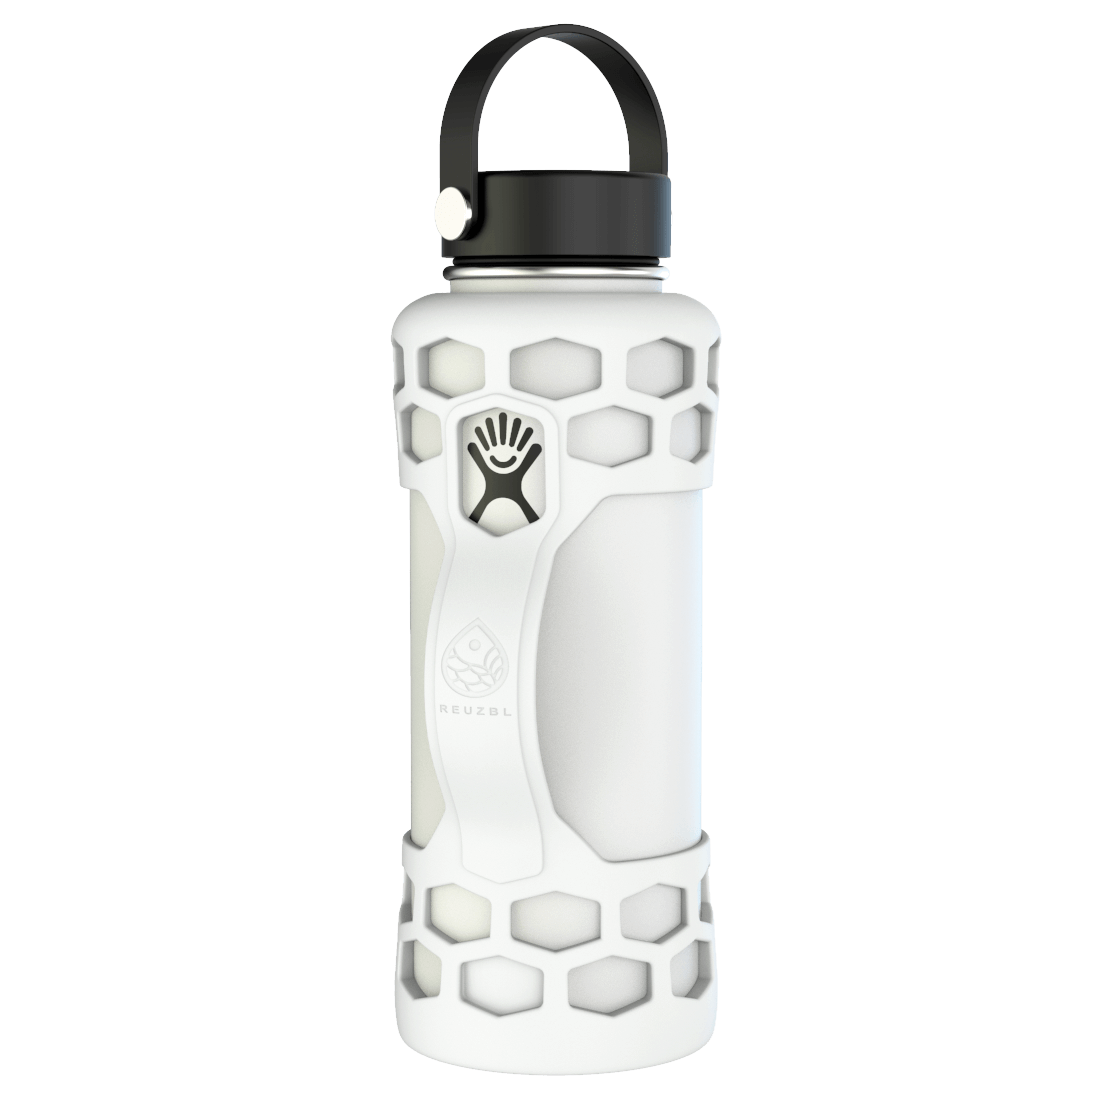 https://reuzbl.com/cdn/shop/products/40oz-water-bottle-sleeve-Front-White.png?v=1627338252